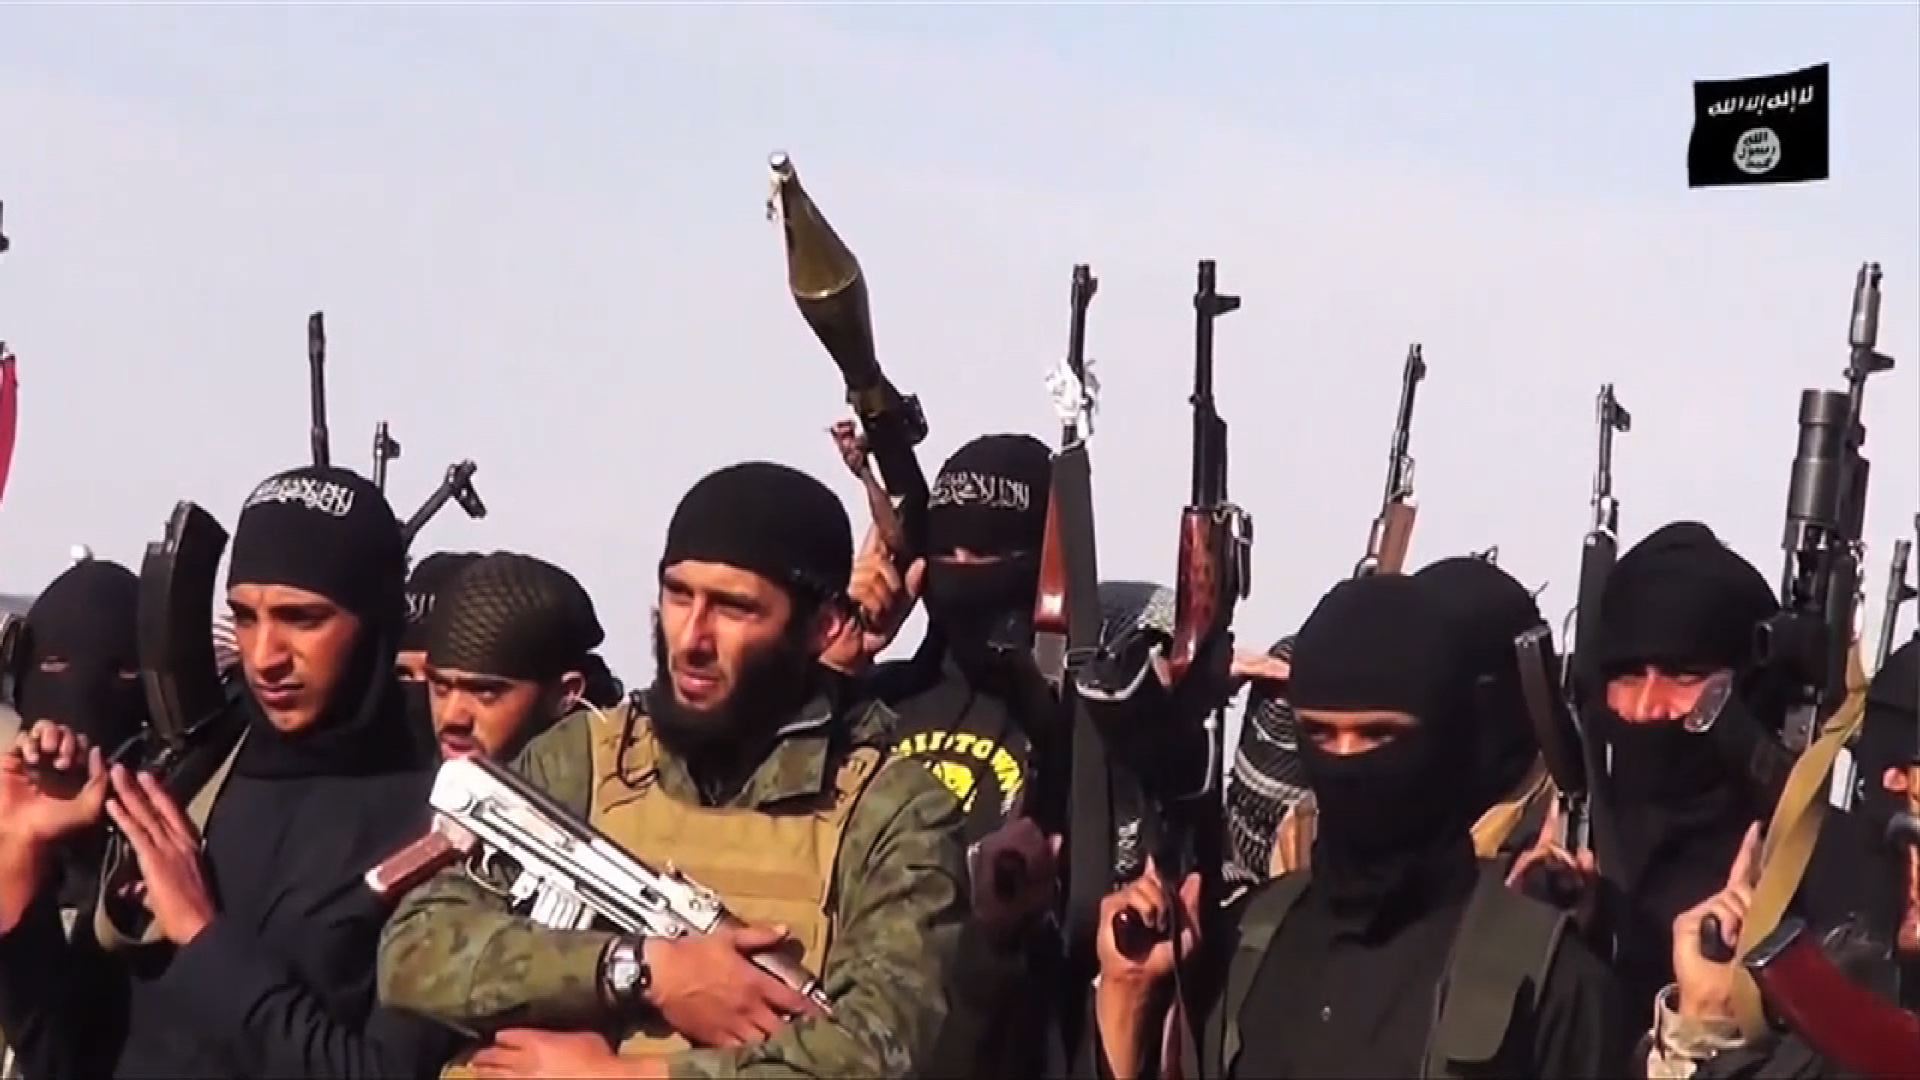 Игил по английски. Террористическая группировка «Исламское государство» в Сирии. Исламское государство Ирак.